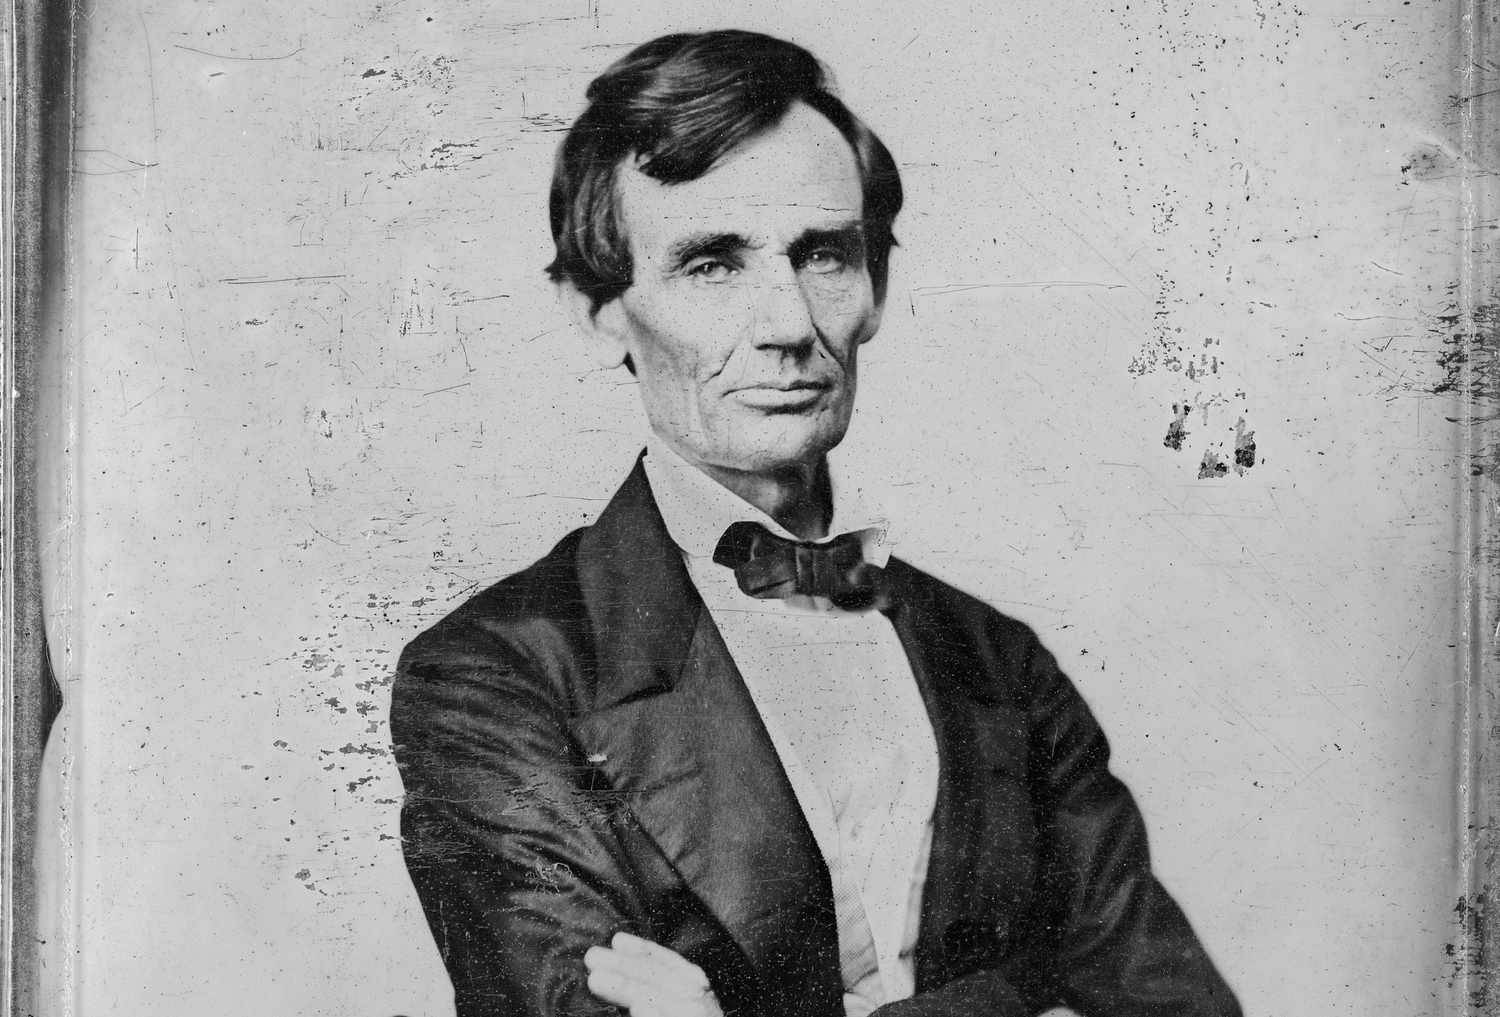 "Abraham Lincoln's Last Beardless Portrait" Wallpaper